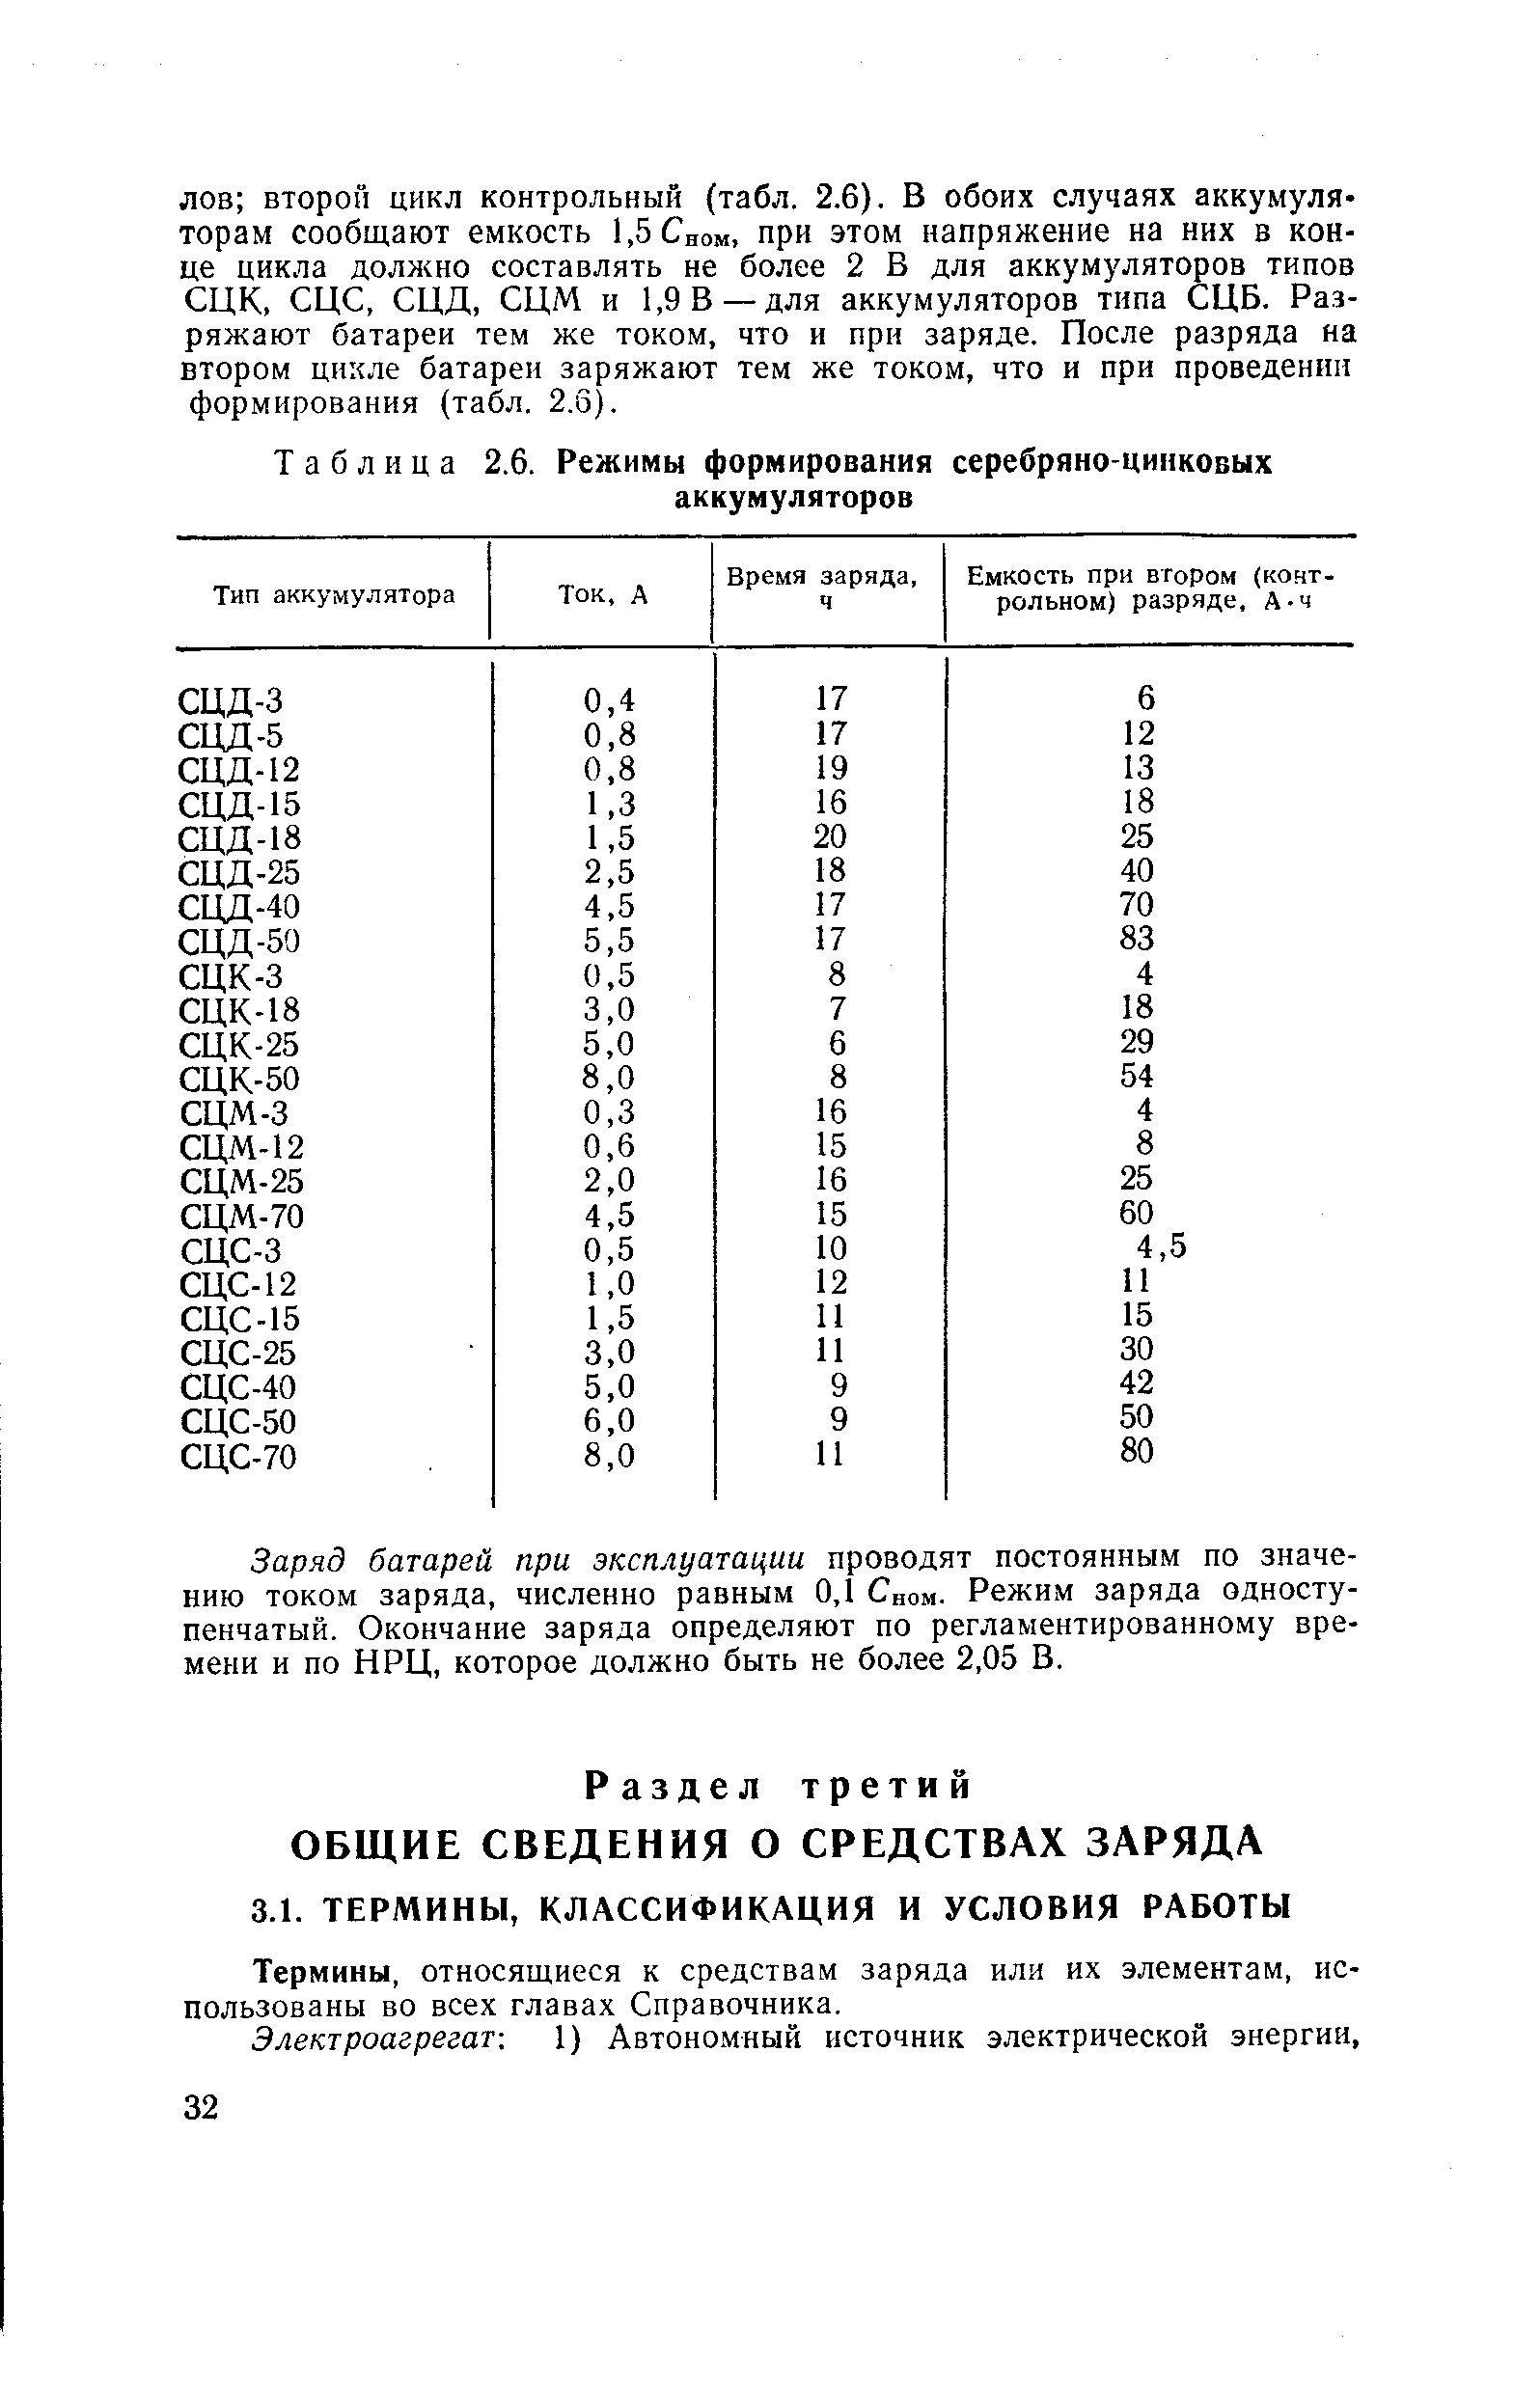 Таблица 2.6. Режимы формирования <a href="/info/267046">серебряно-цинковых</a> аккумуляторов
